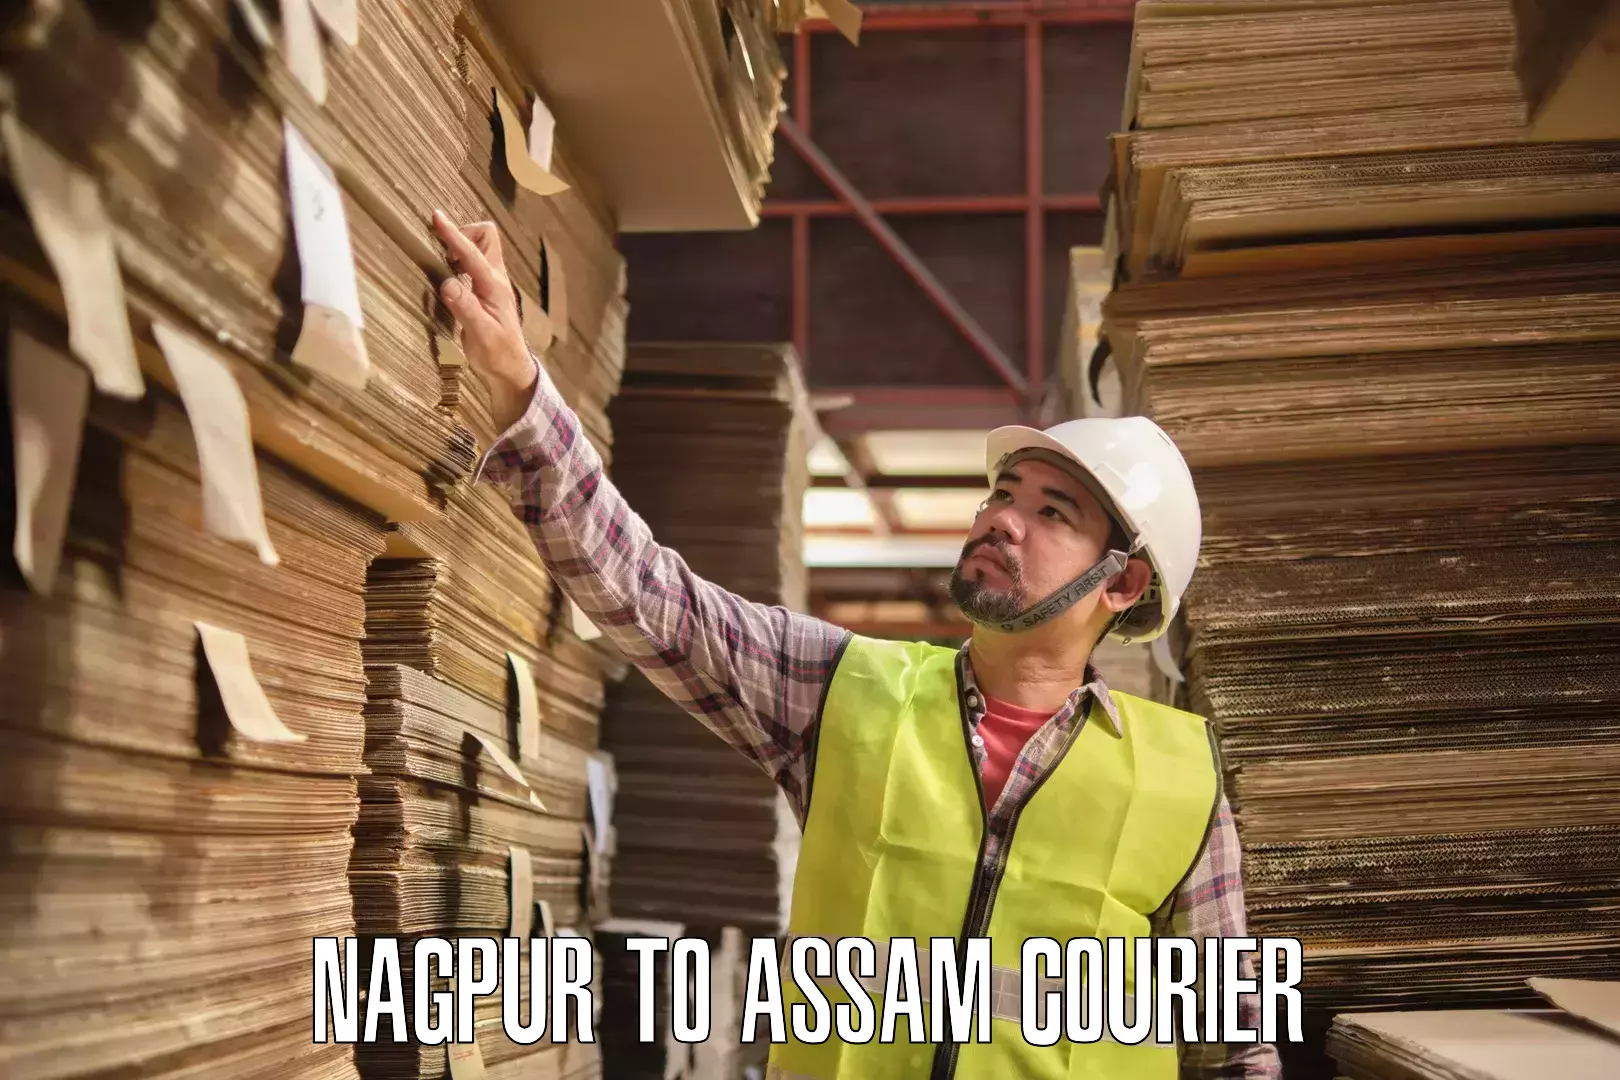 Pharmaceutical courier Nagpur to Amoni